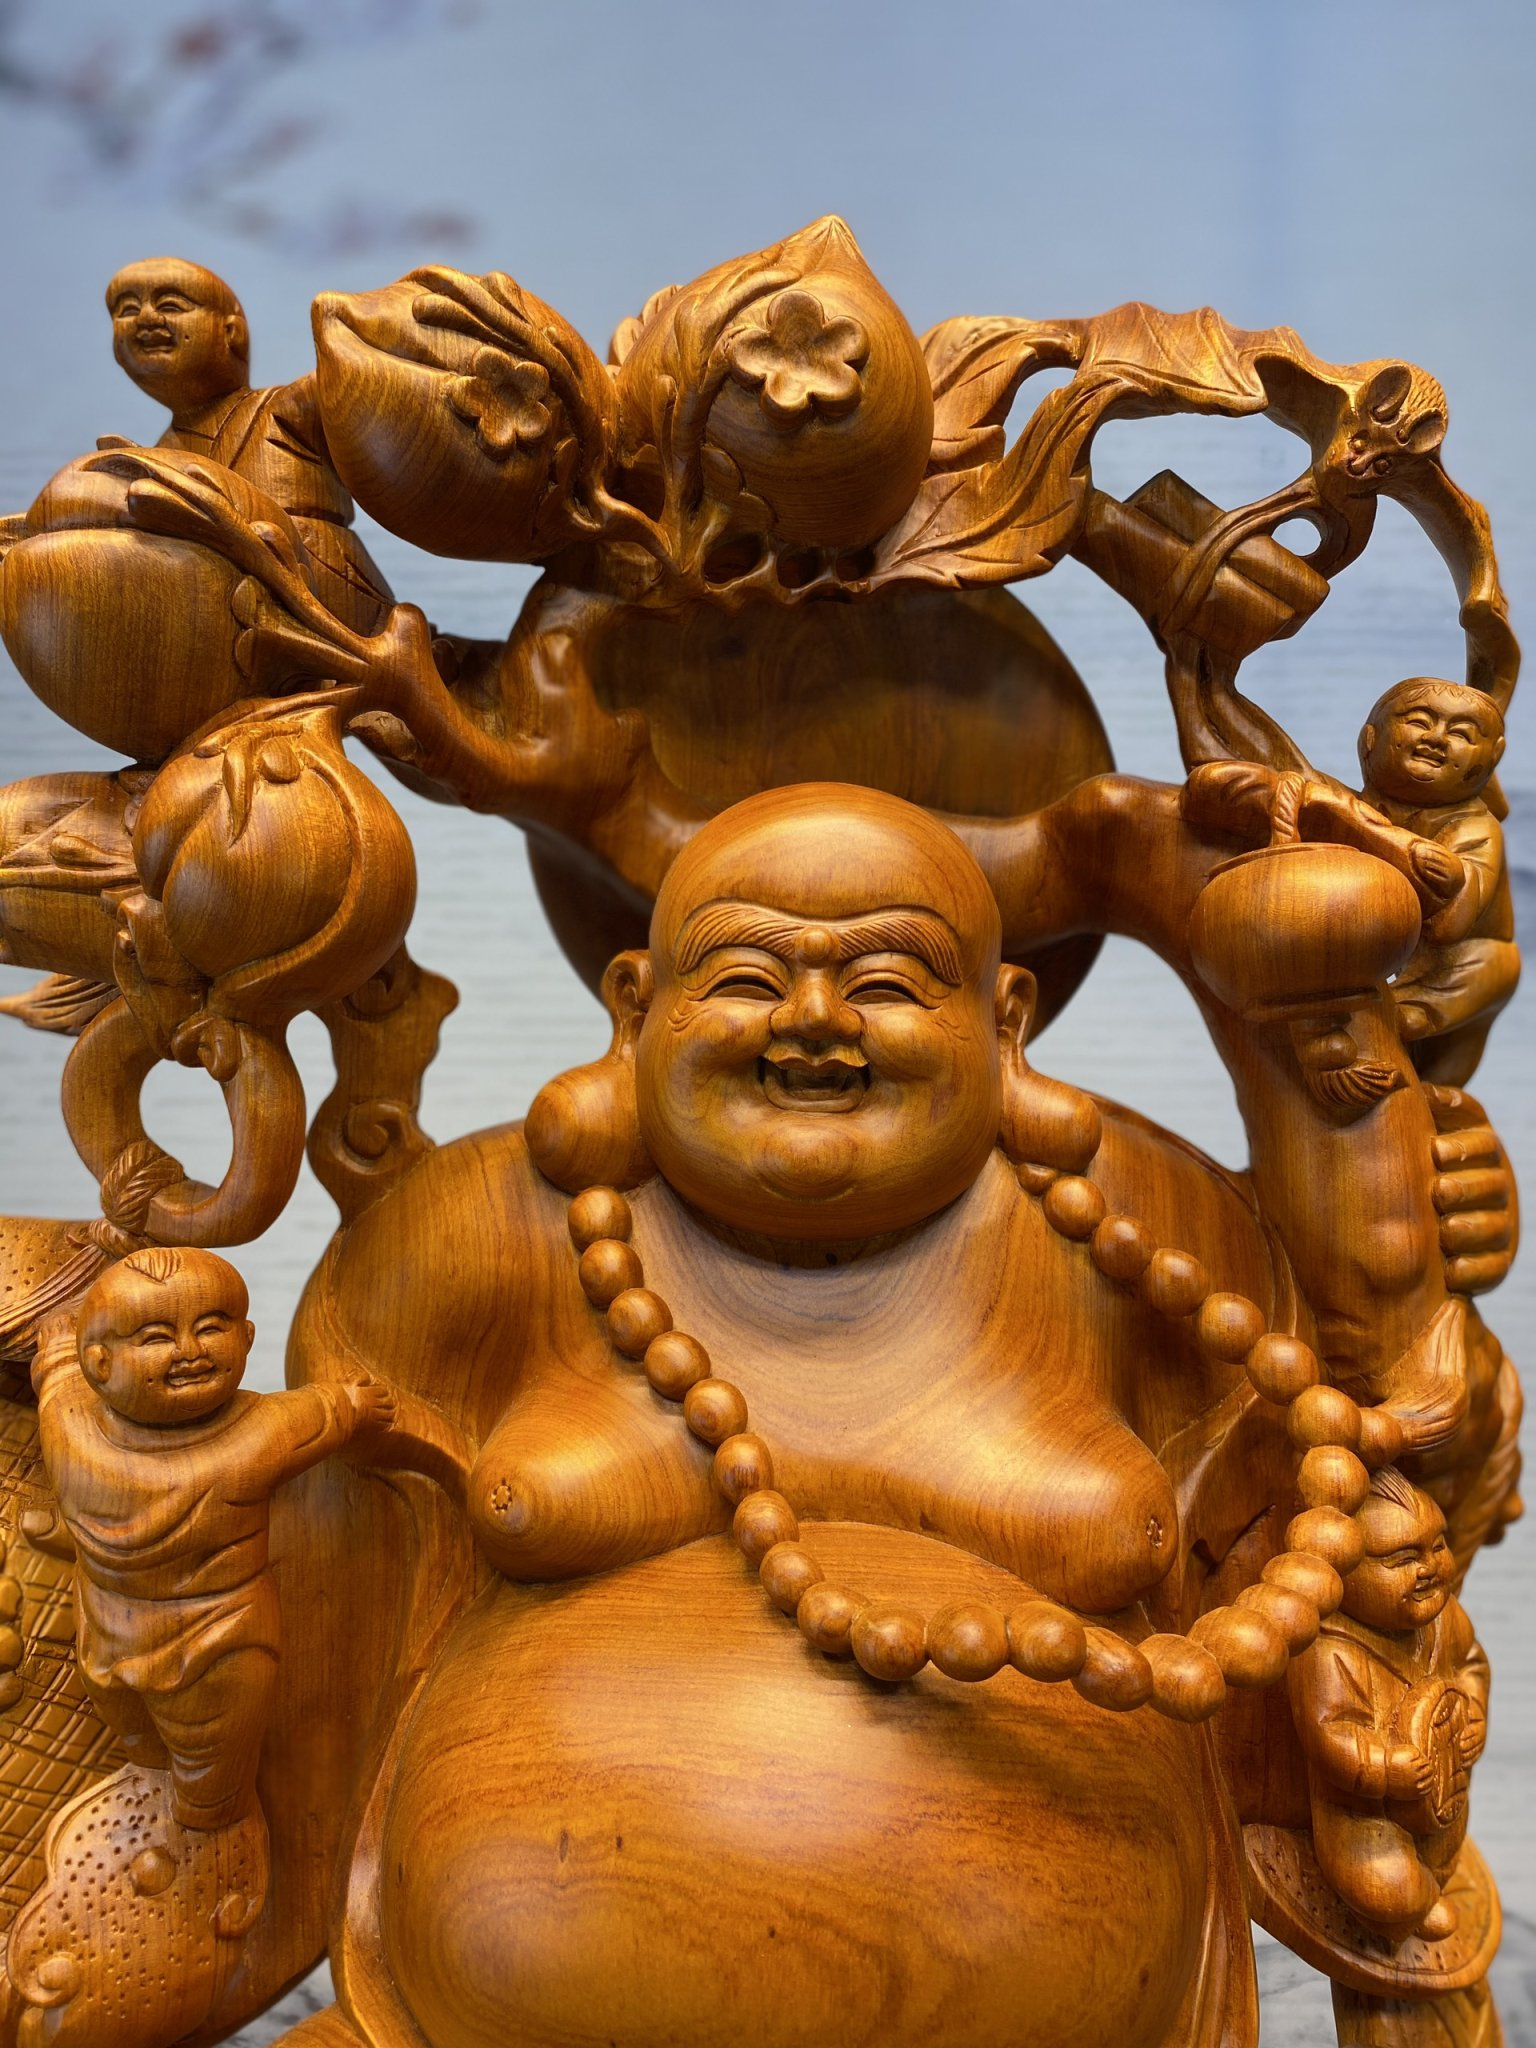 Tượng Phật Di Lặc phúc lộc bằng đồng khảm ngũ sắc tinh xảo